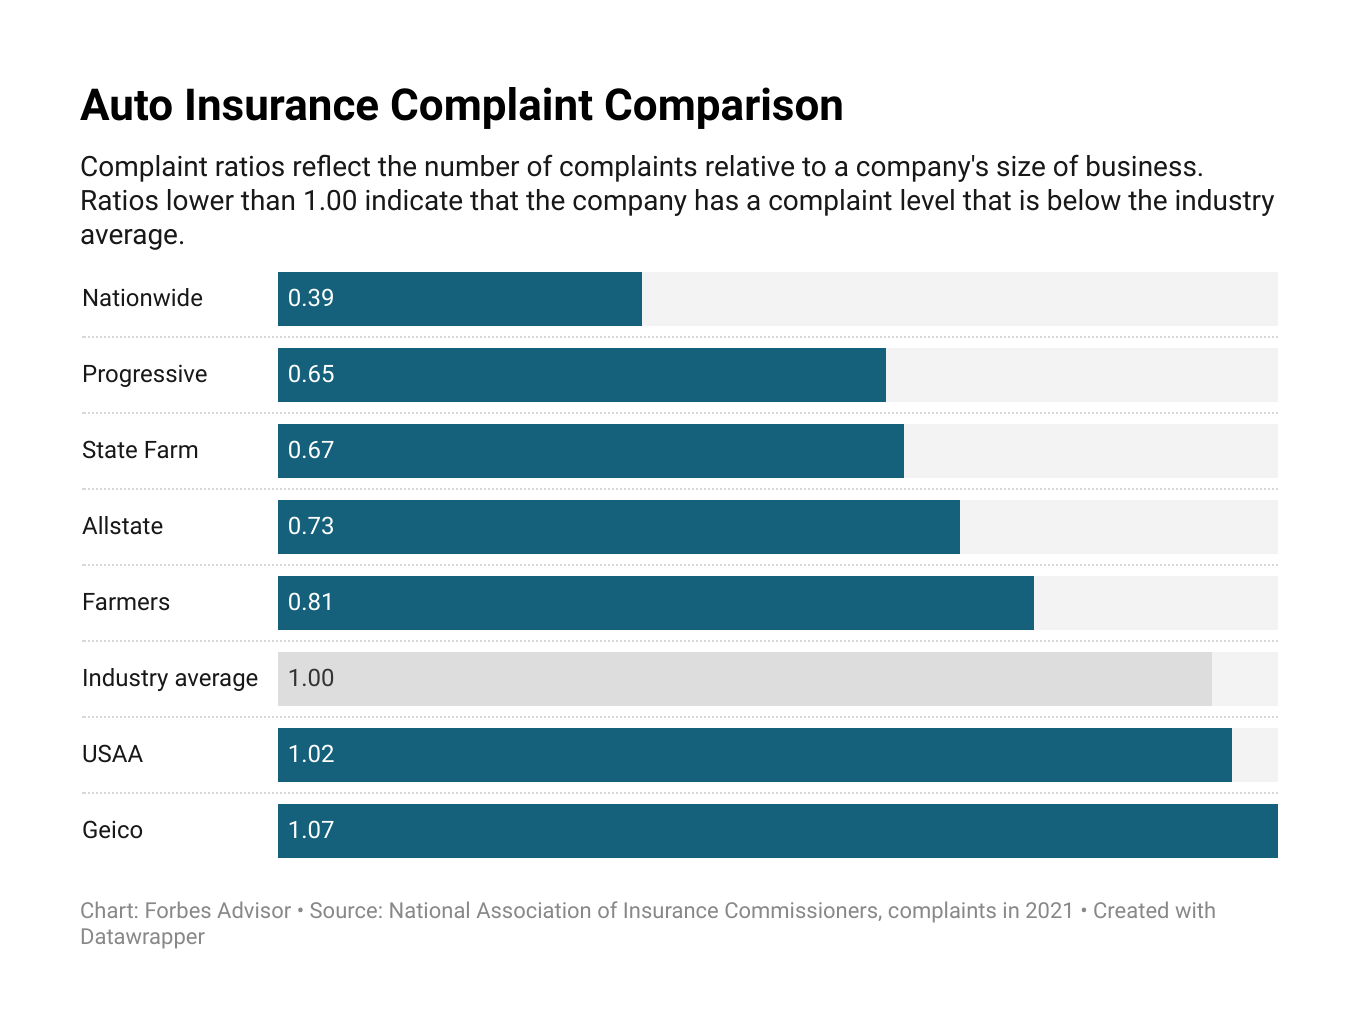 Car Insurance Compare